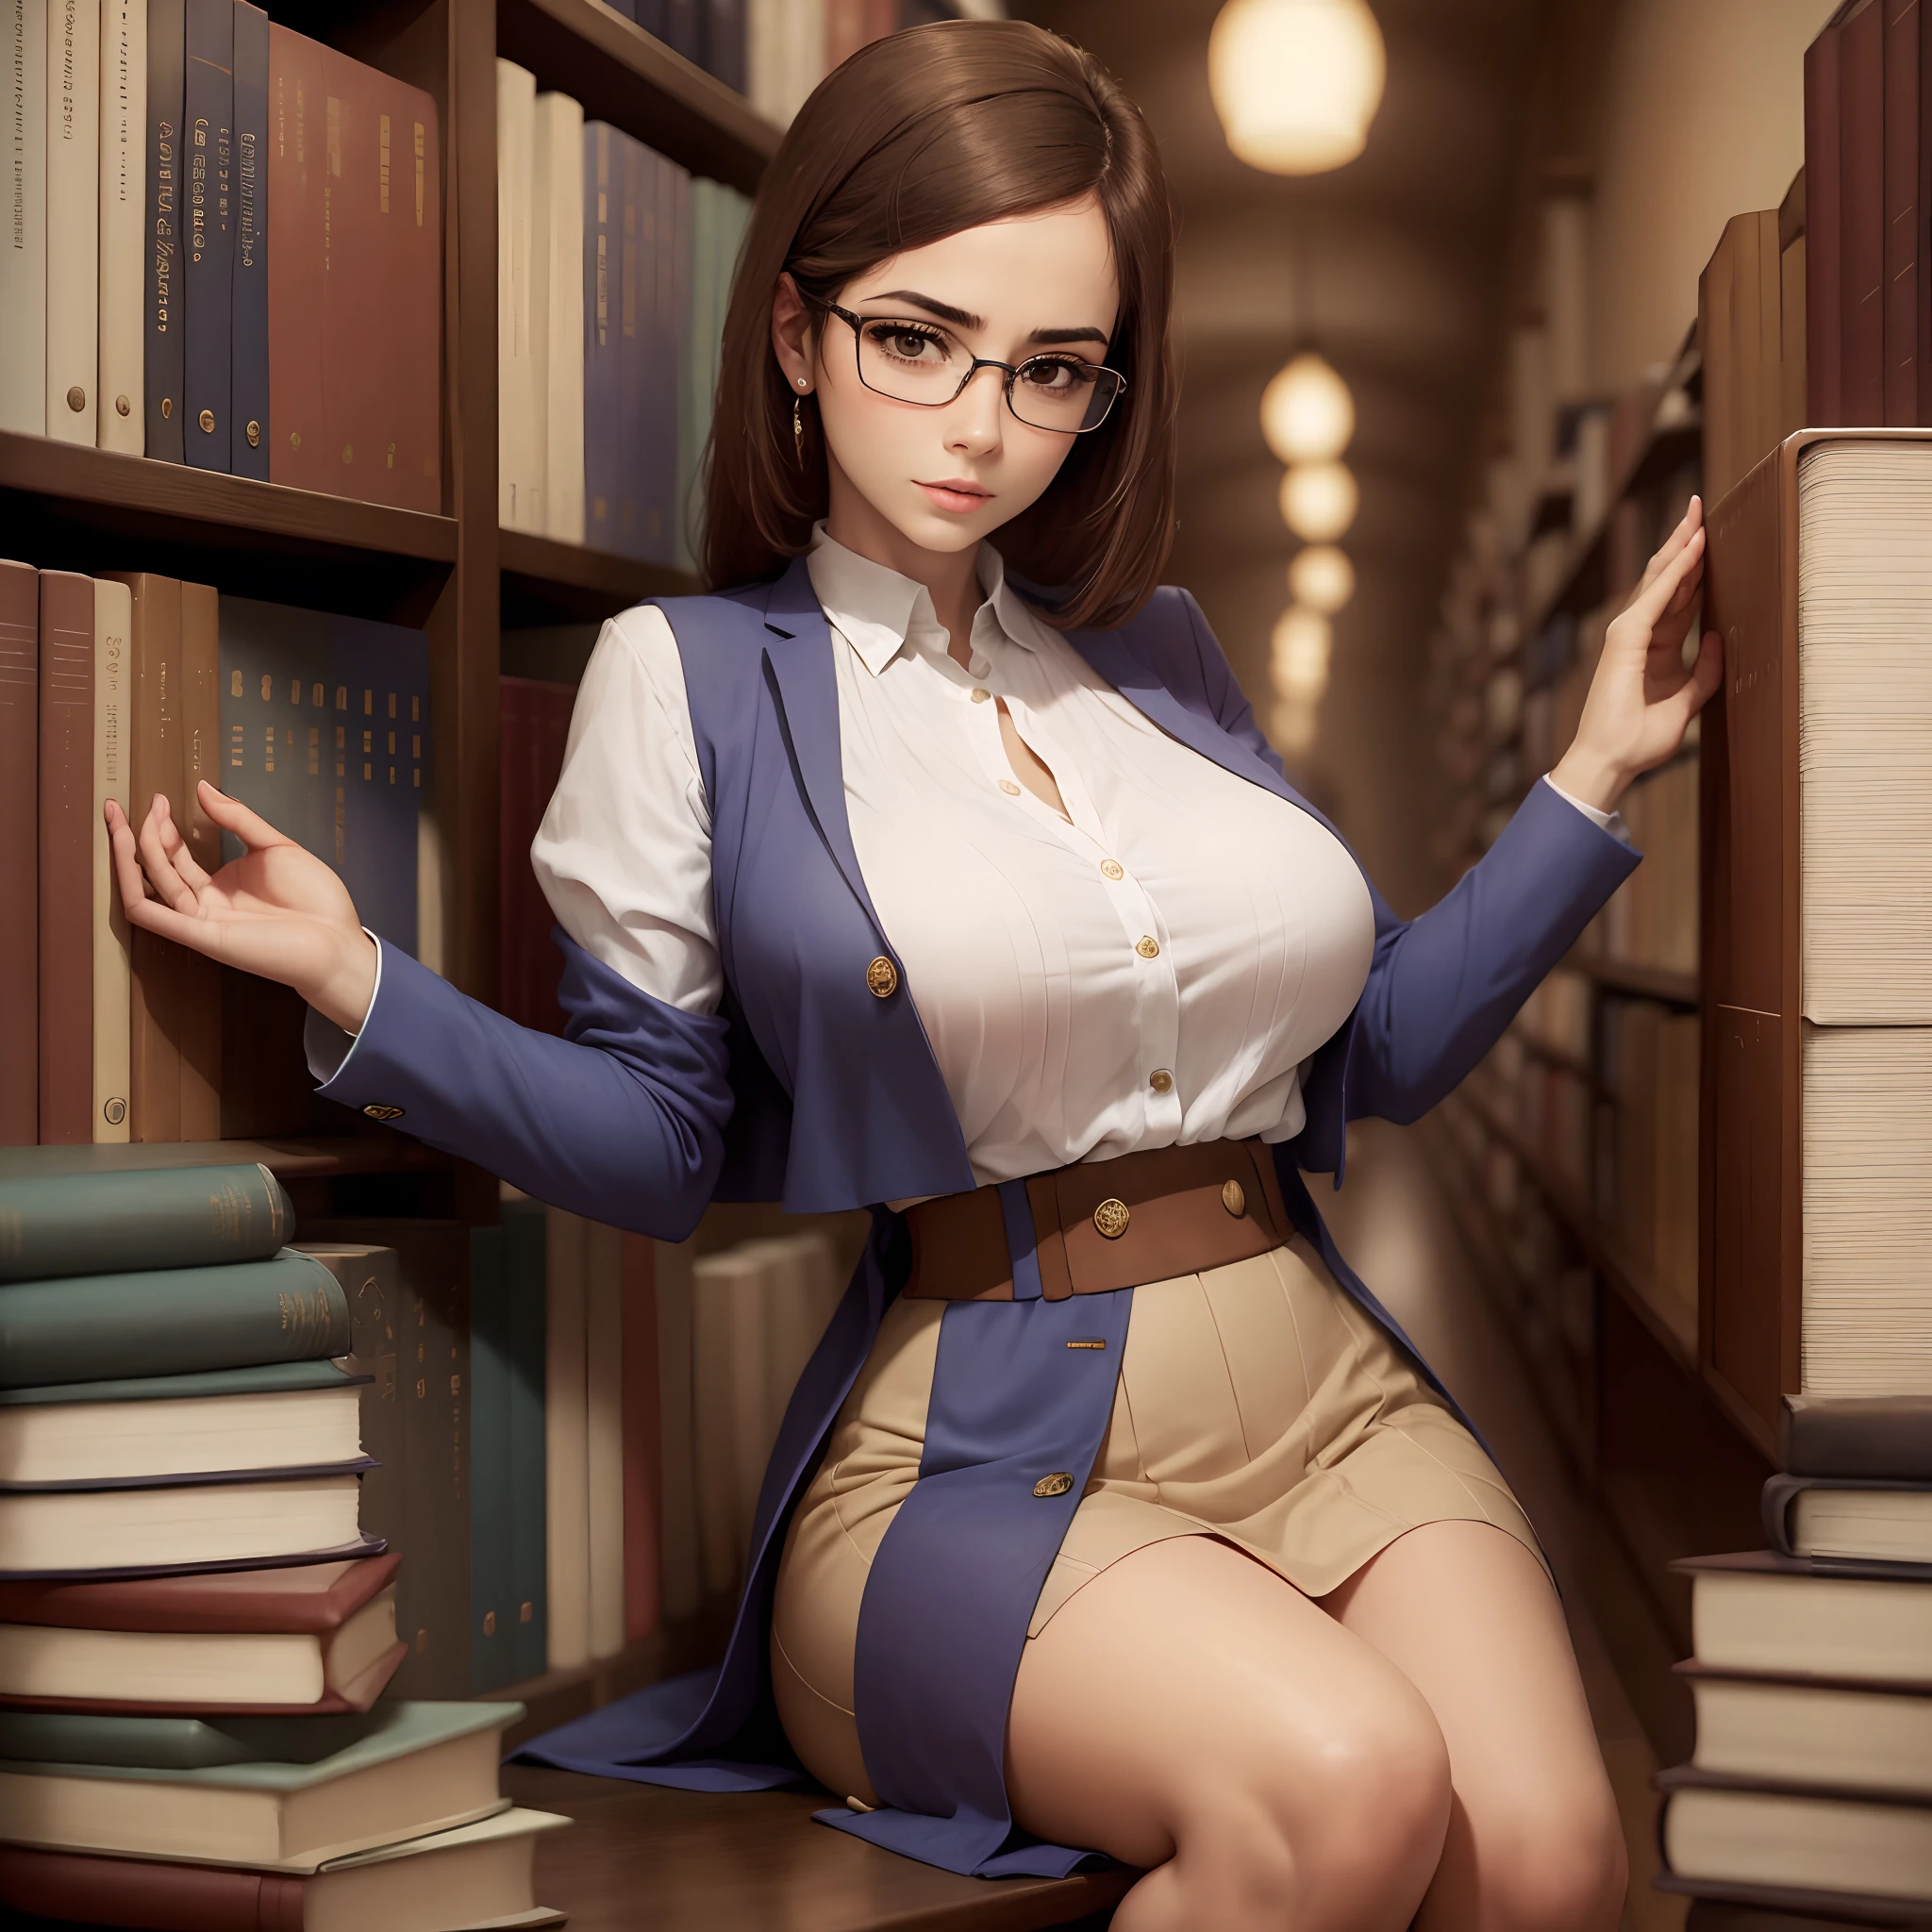 女性1名, 美しい, 官能的な, 図書館で, メガネ付き, 大きな胸, スリム, エレガント